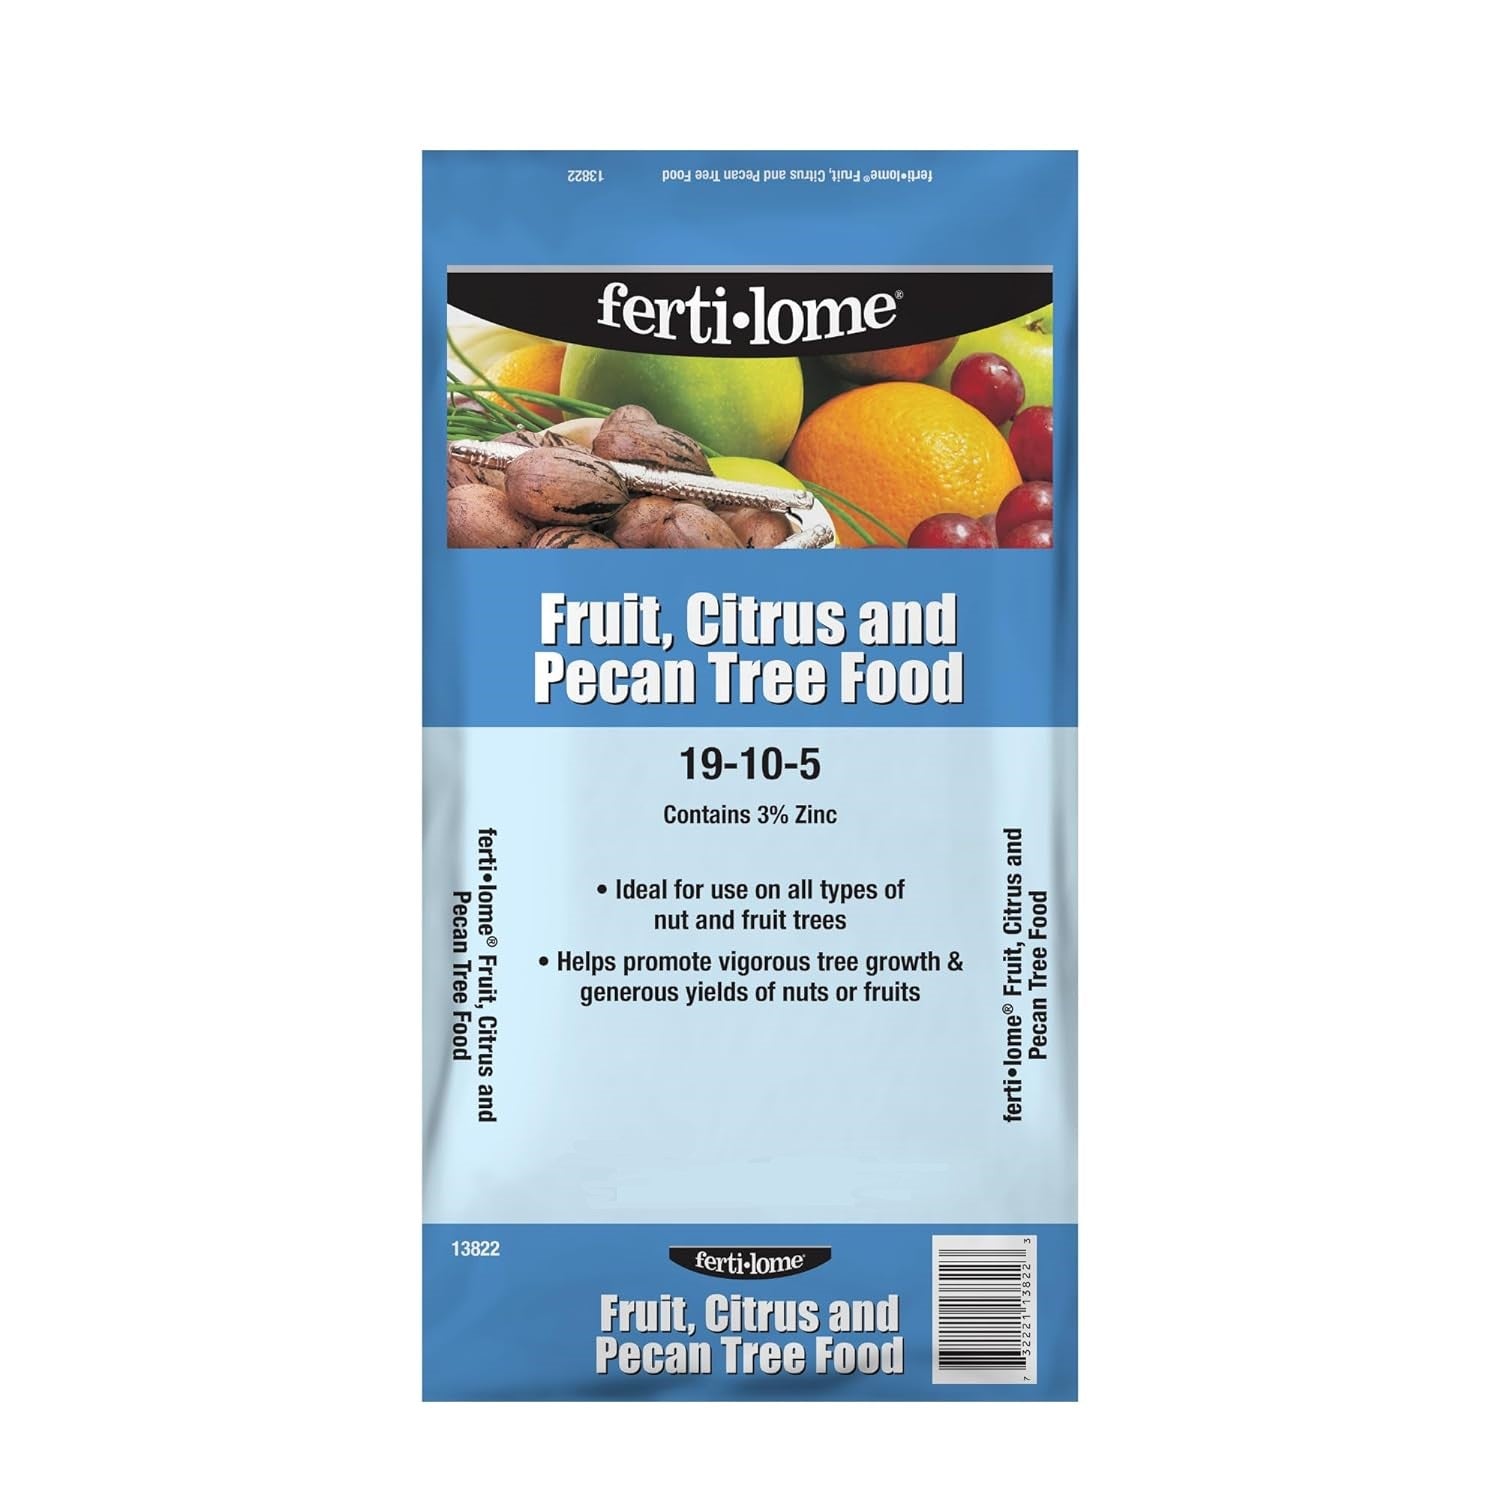 Fertilome Fruit, Citrus, and Pecan Tree Food Fertilizer 19-10-5